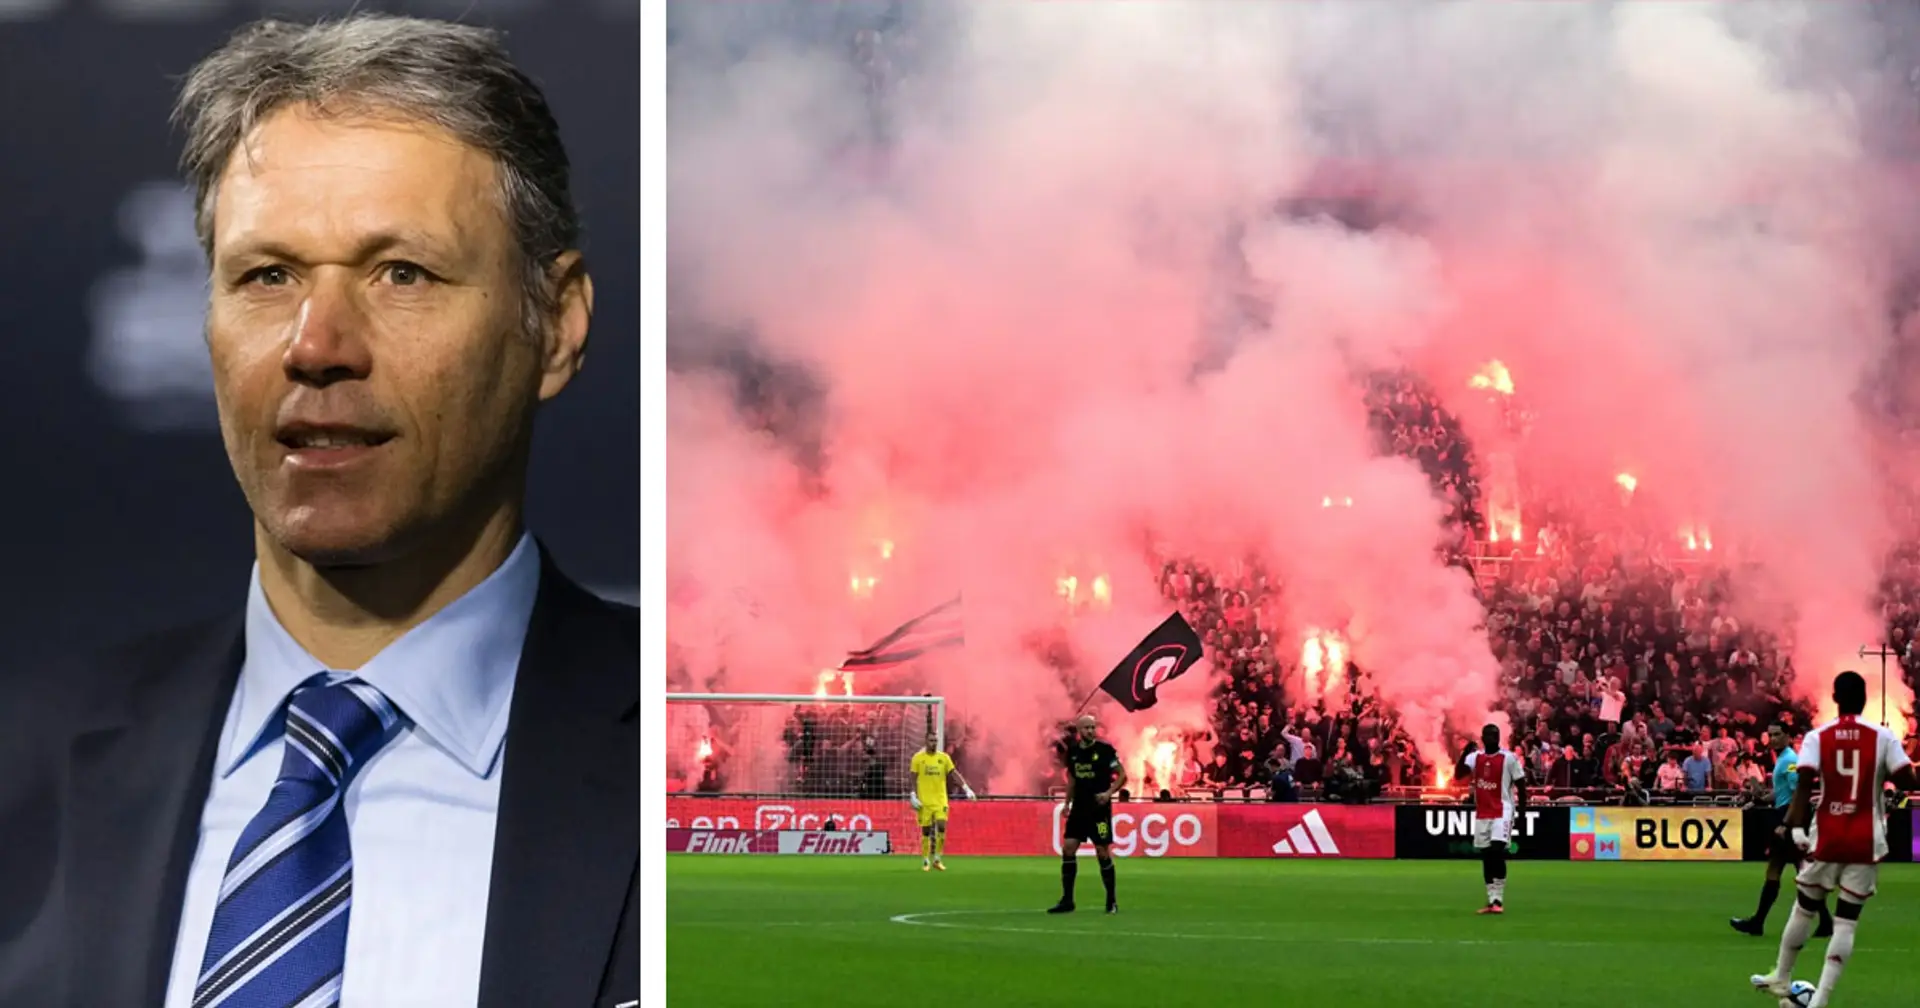 "Bisogna fermare il calcio in Olanda": Van Basten perentorio dopo i disordini della tifoseria dell'Ajax